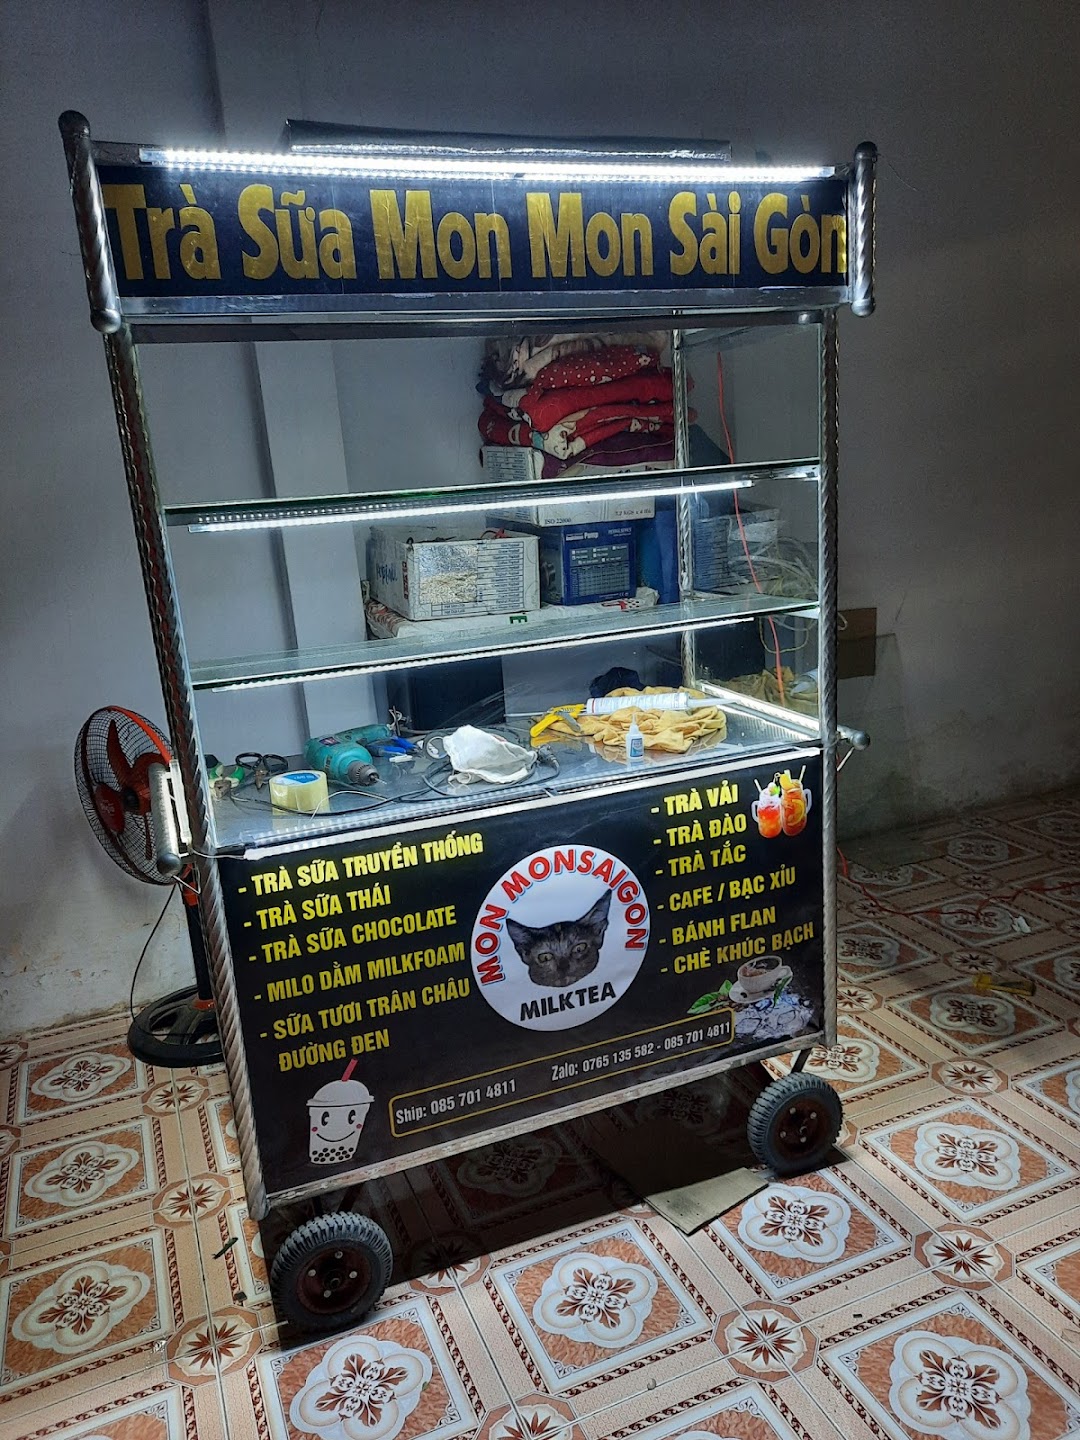 Trà Sữa Mon Mon Sài Gòn